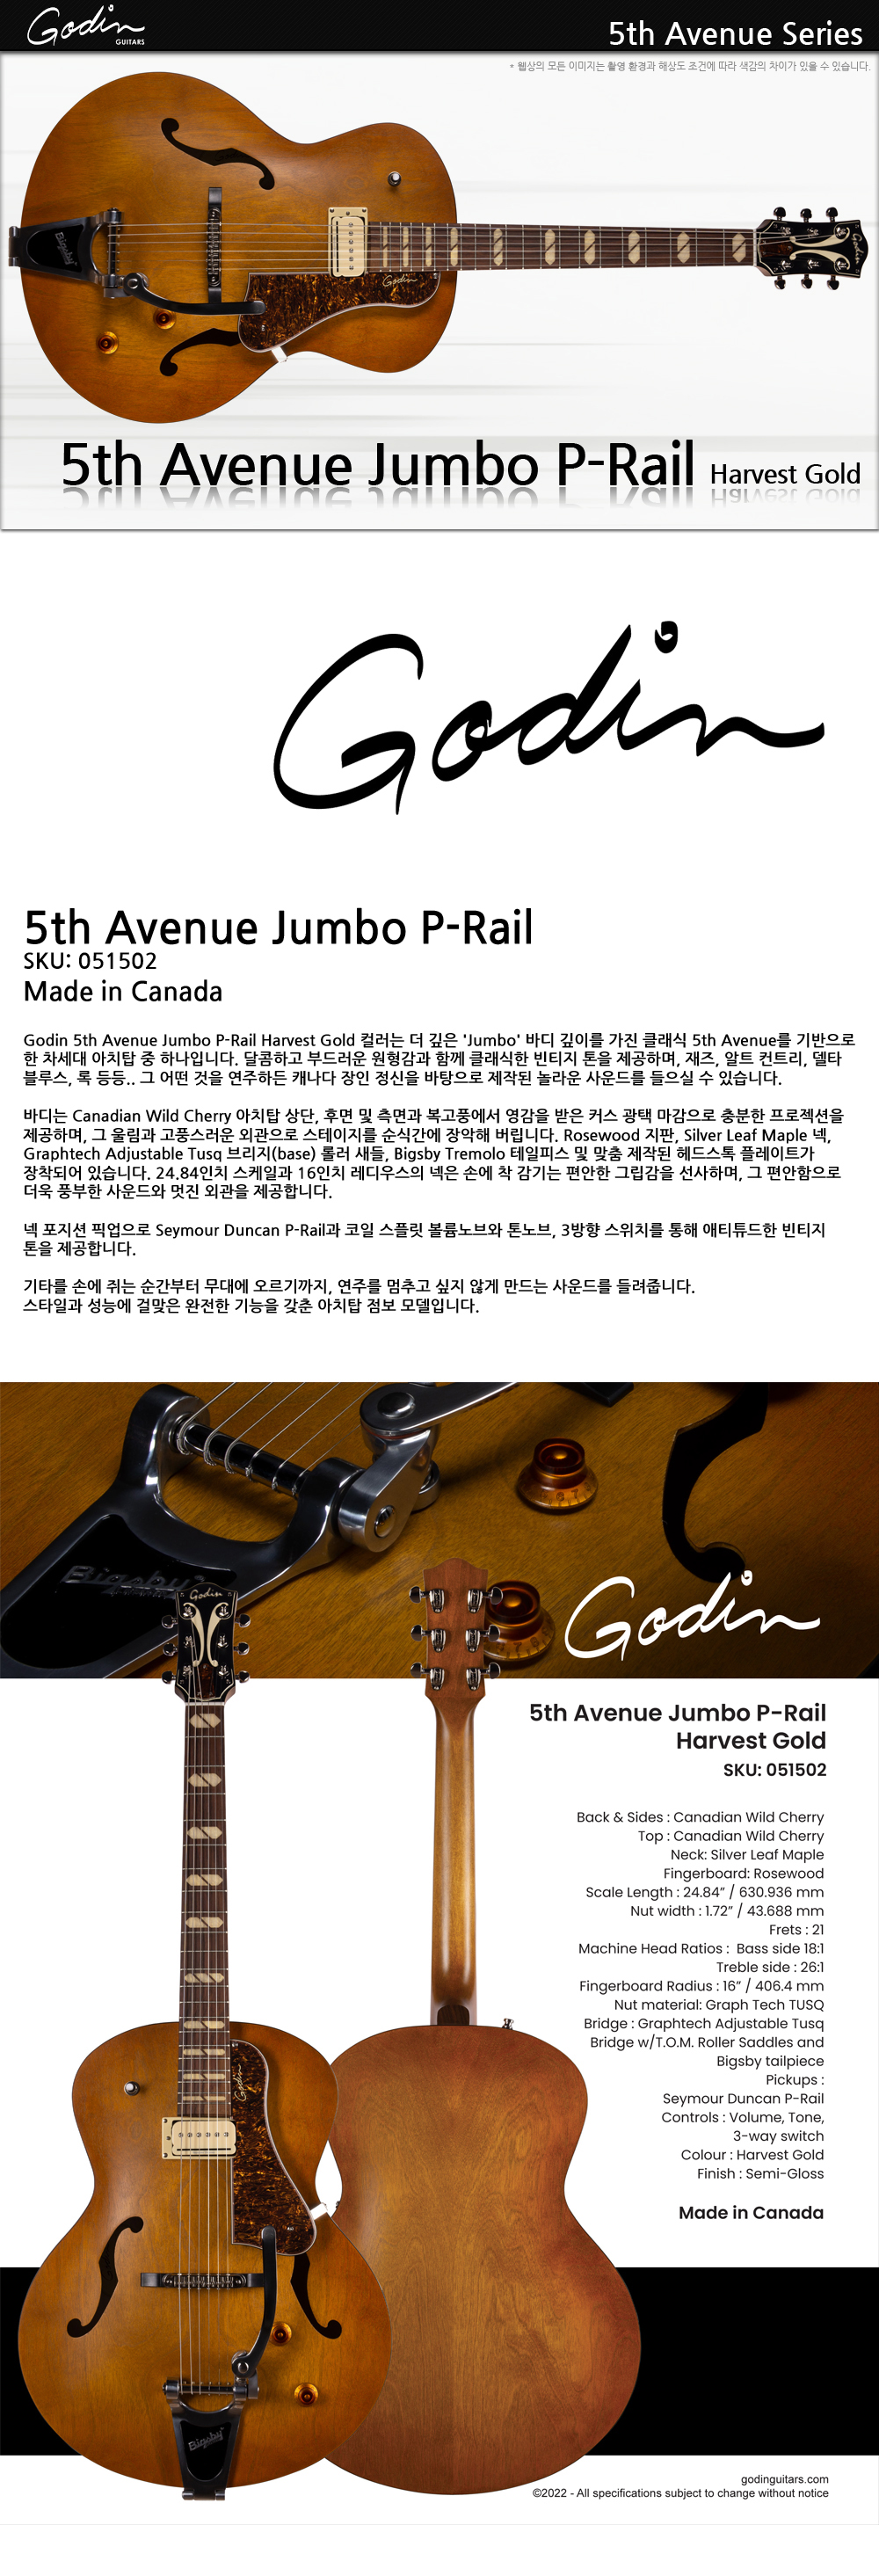 Godin-051502-5thAvenue-Jumbo-P-Rail-HarvestGold_1_144004.jpg